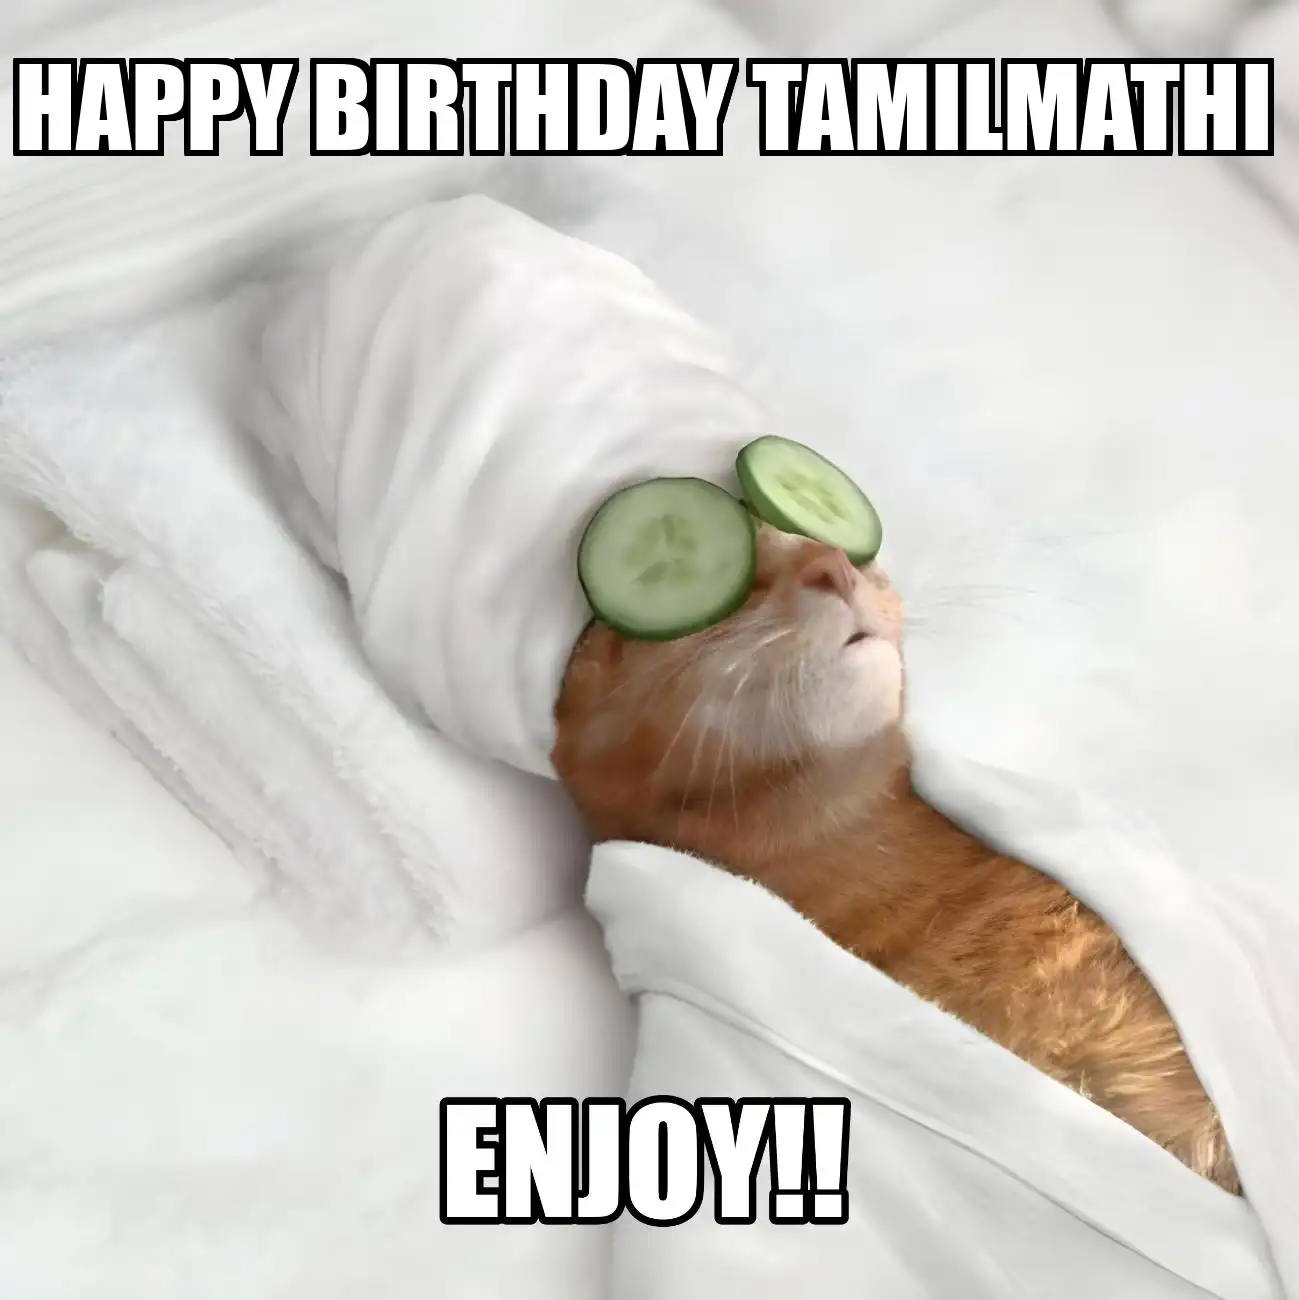 Happy Birthday Tamilmathi Enjoy Cat Meme